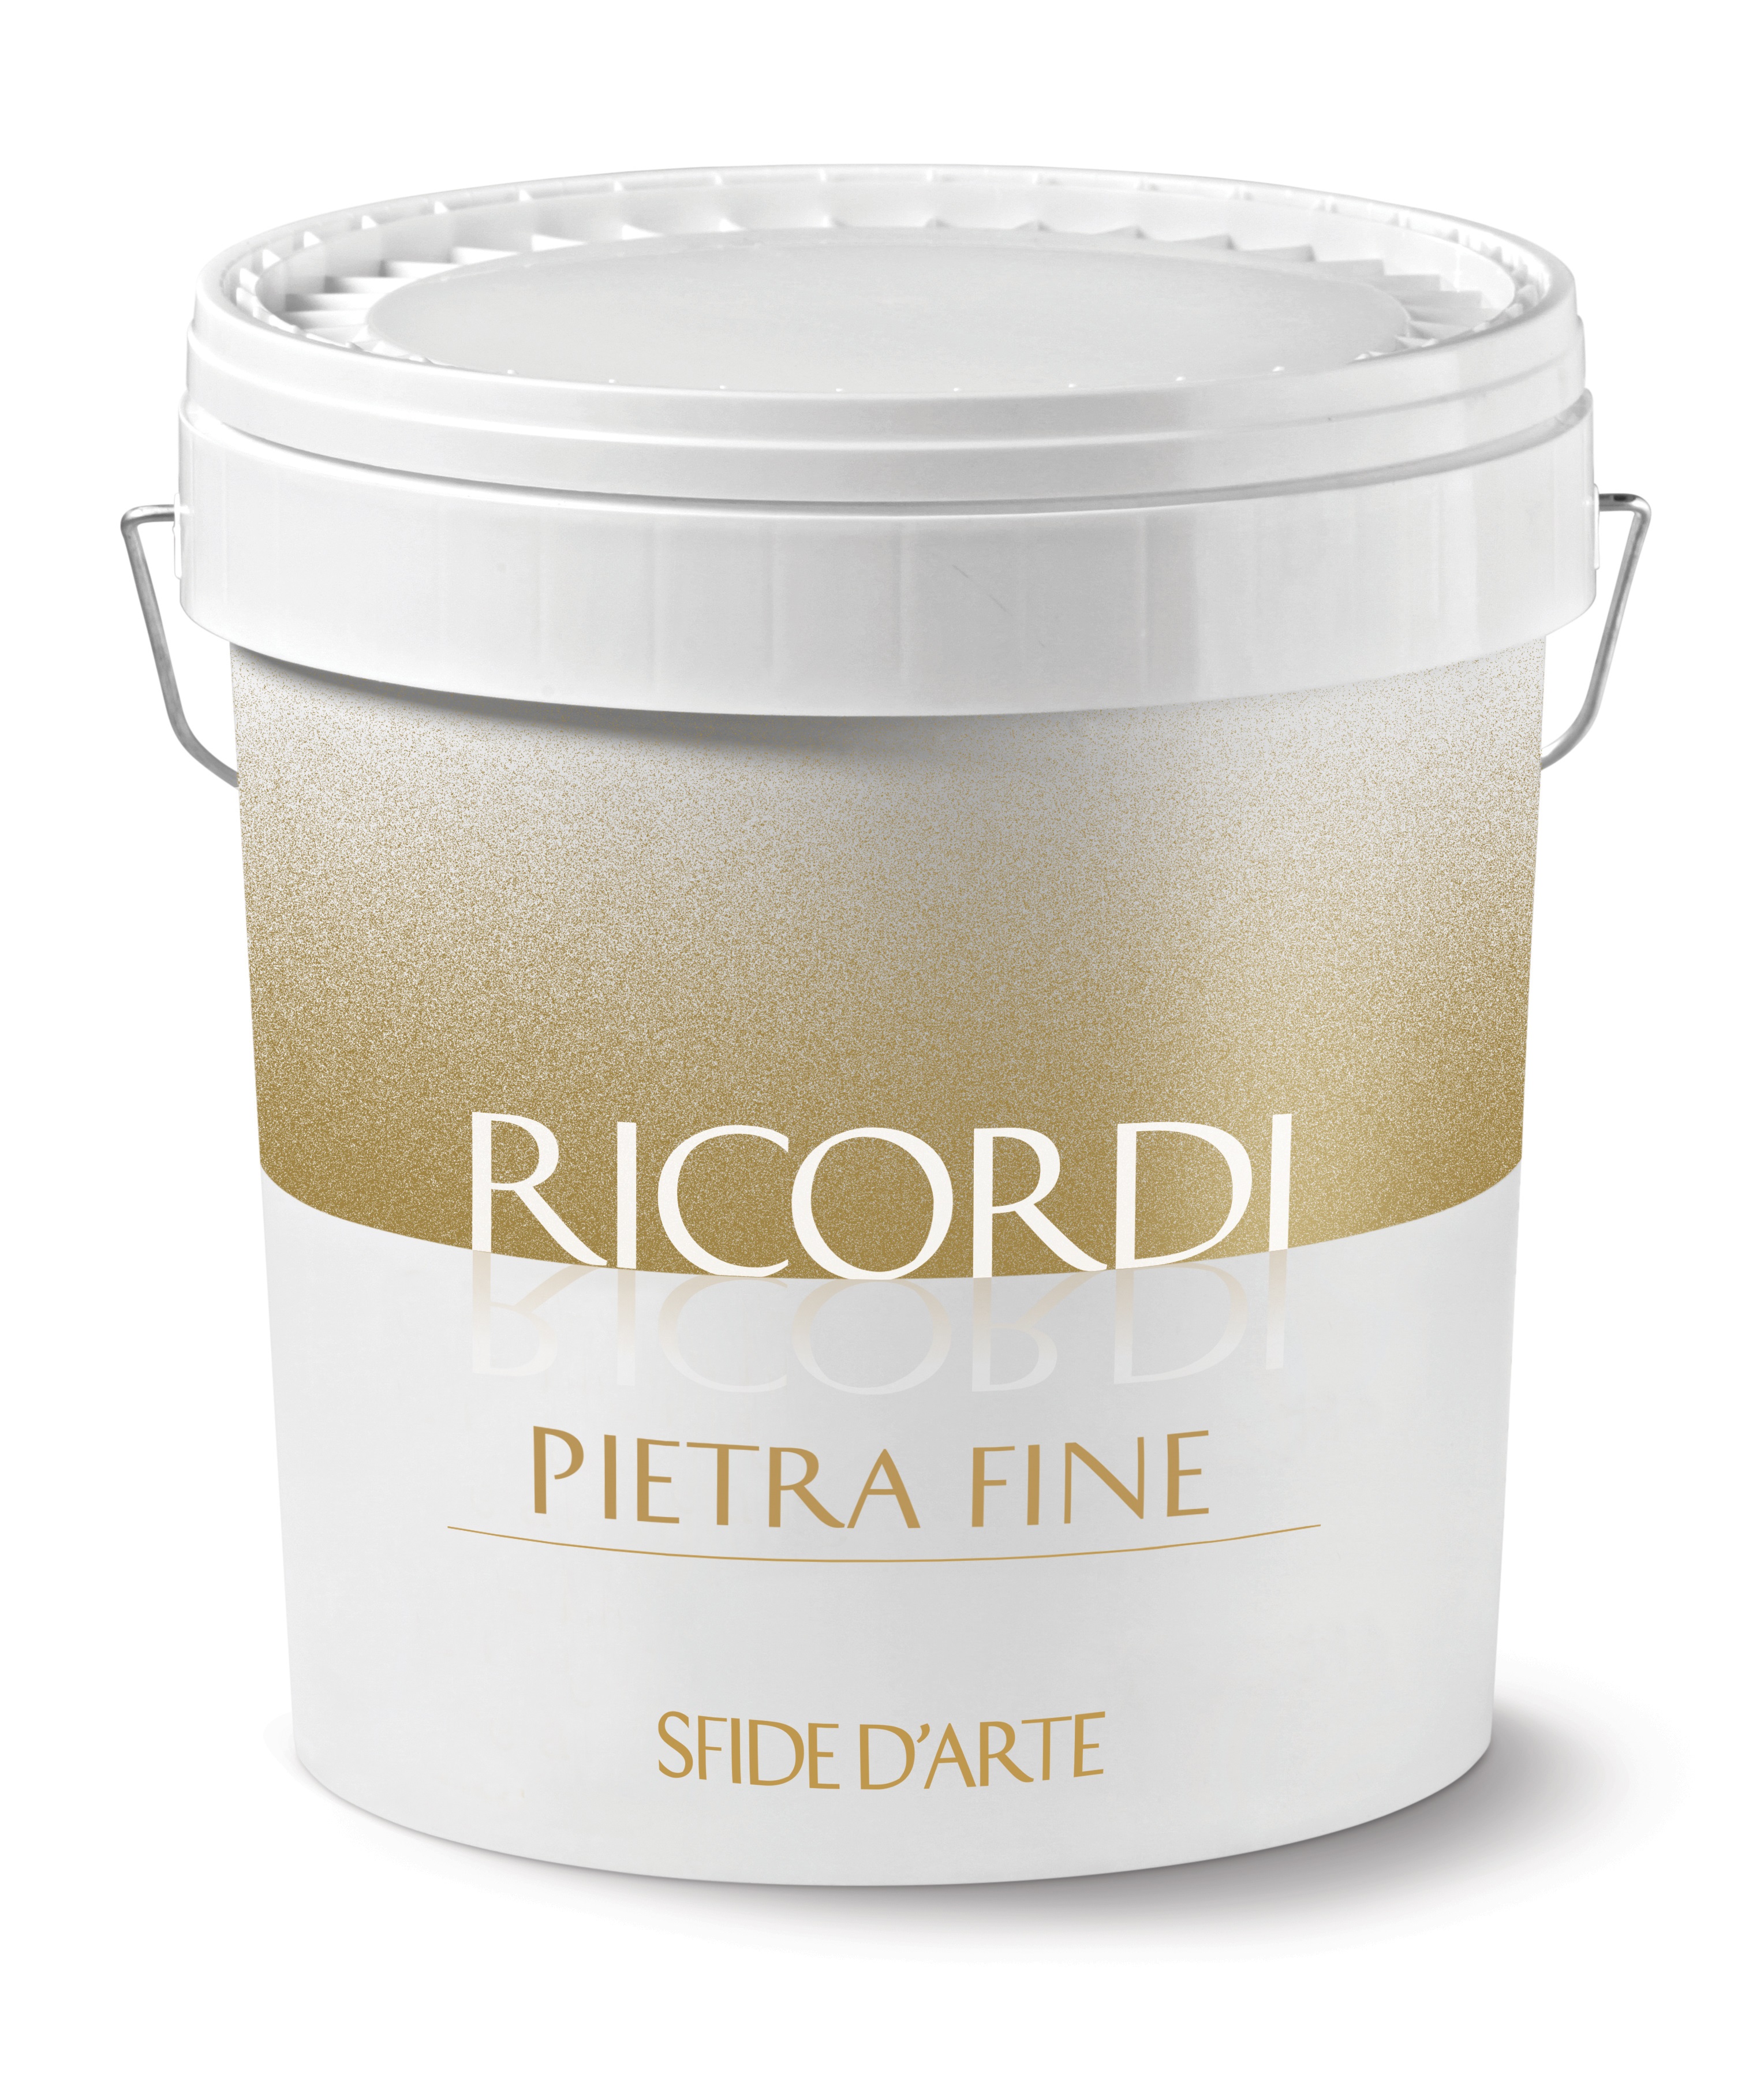 RICORDI PIETRA FINE: Essenzielle NatürlichkeitFormbare, feine Mineralputzbeschichtung auf Kalkbasis